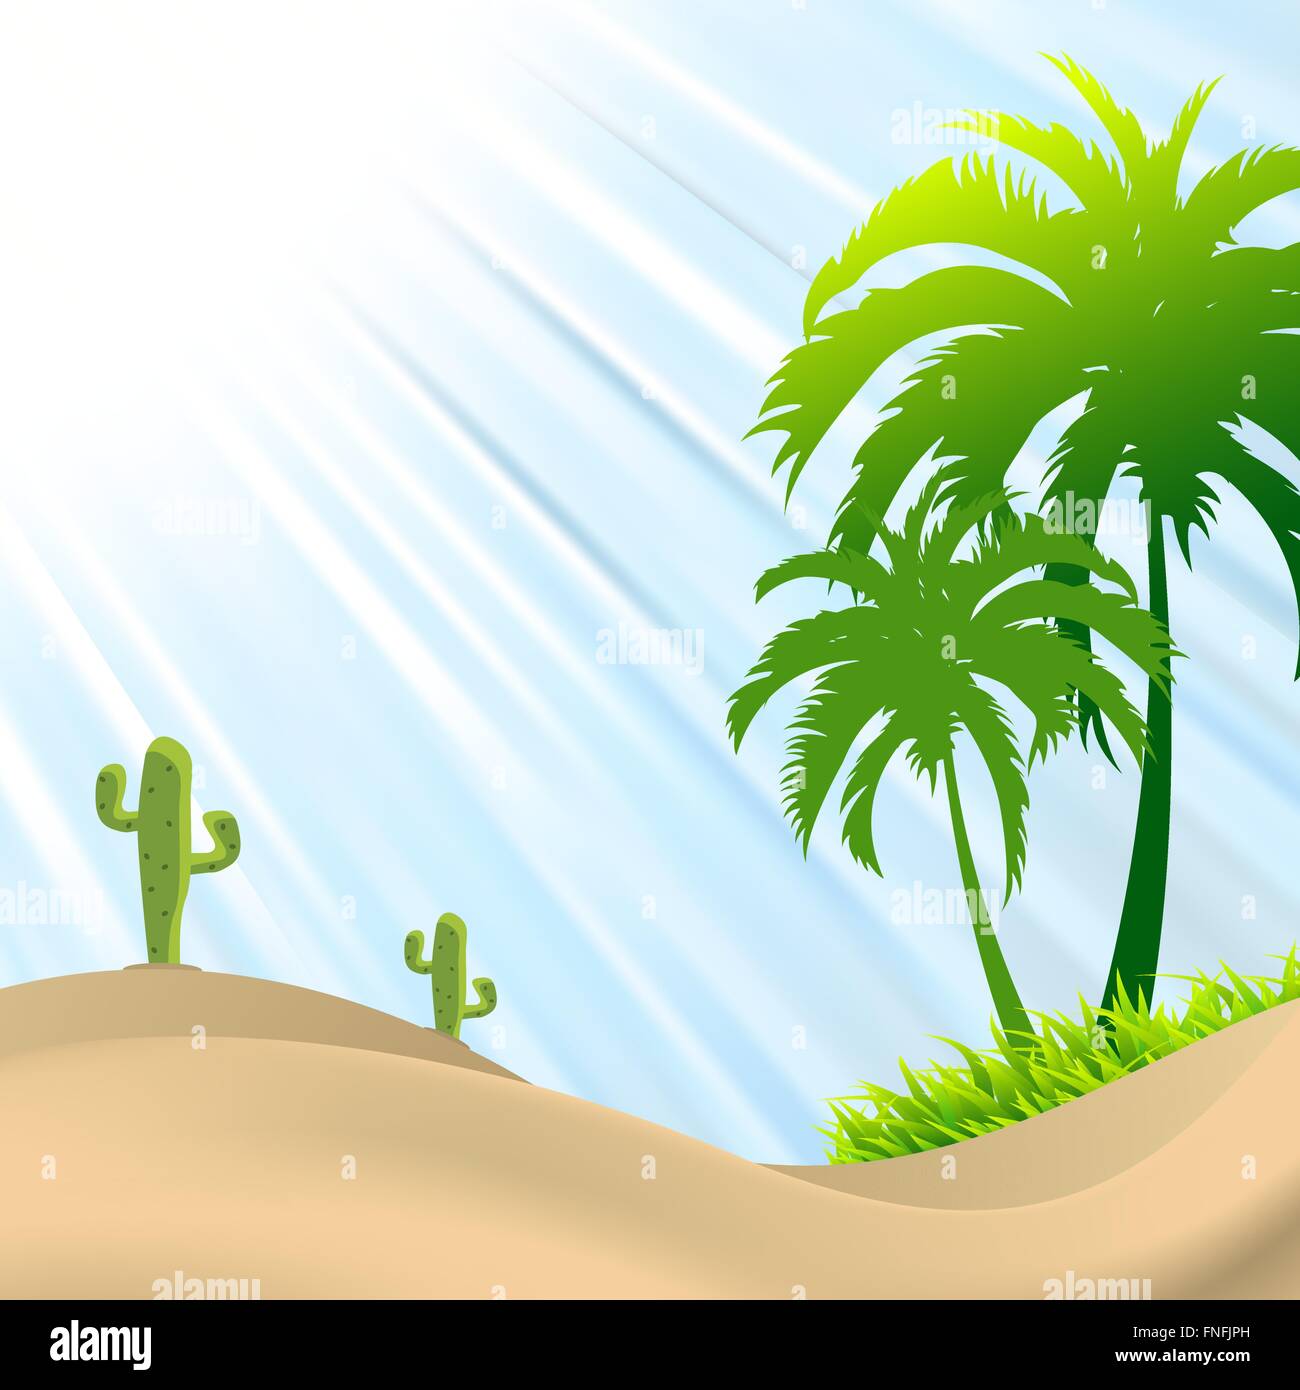 Scène de désert avec palmier,cactus, dunes de sable Illustration de Vecteur